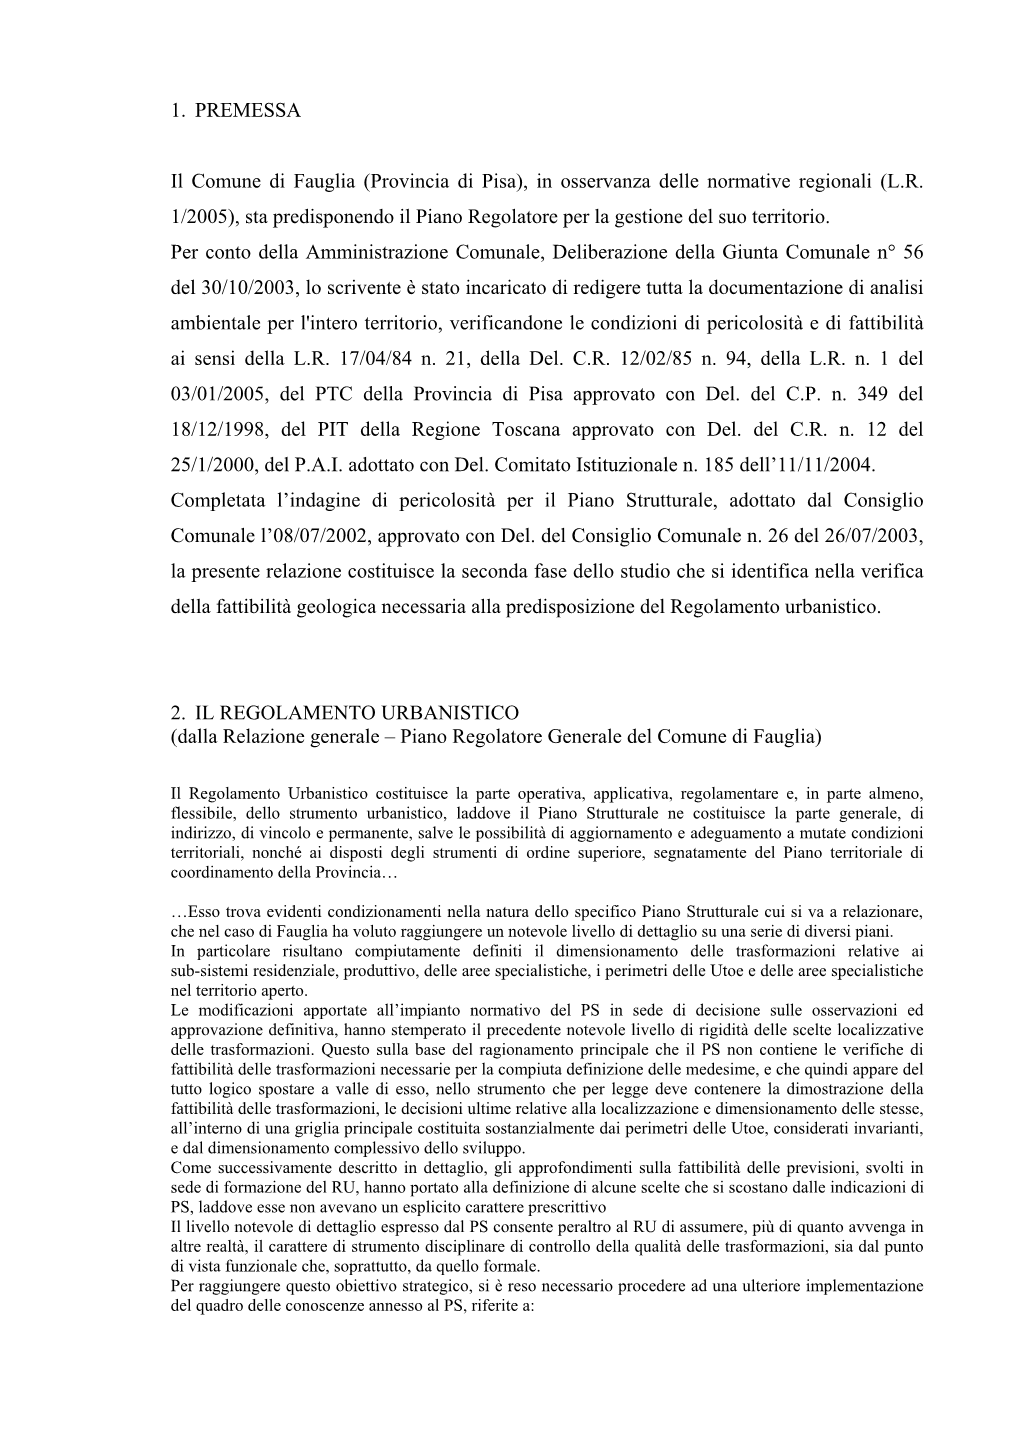 Provincia Di Pisa), in Osservanza Delle Normative Regionali (LR 1/2005